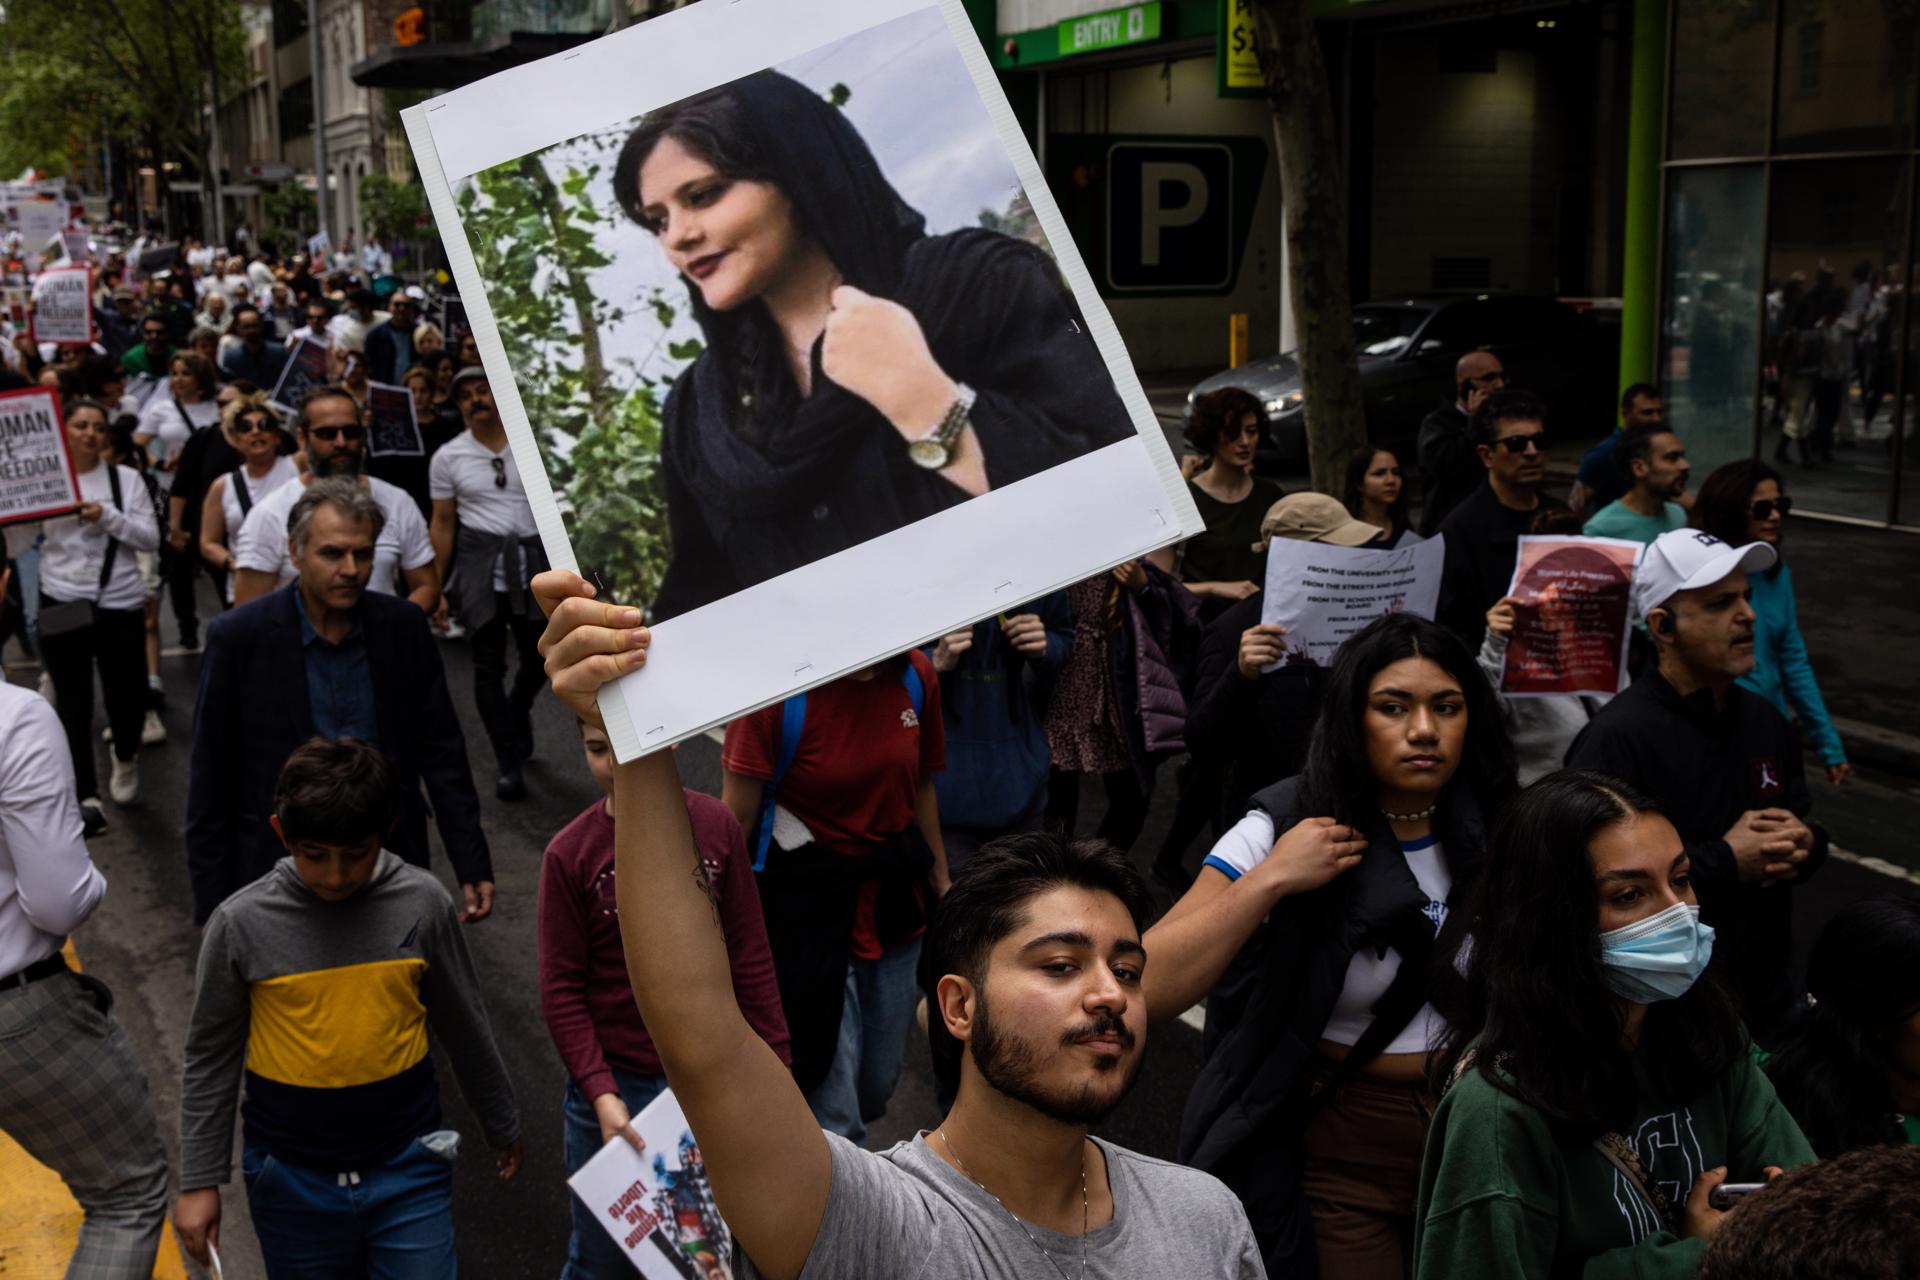 Las protestas en Irán, una “revolución” que sacude la República Islámica